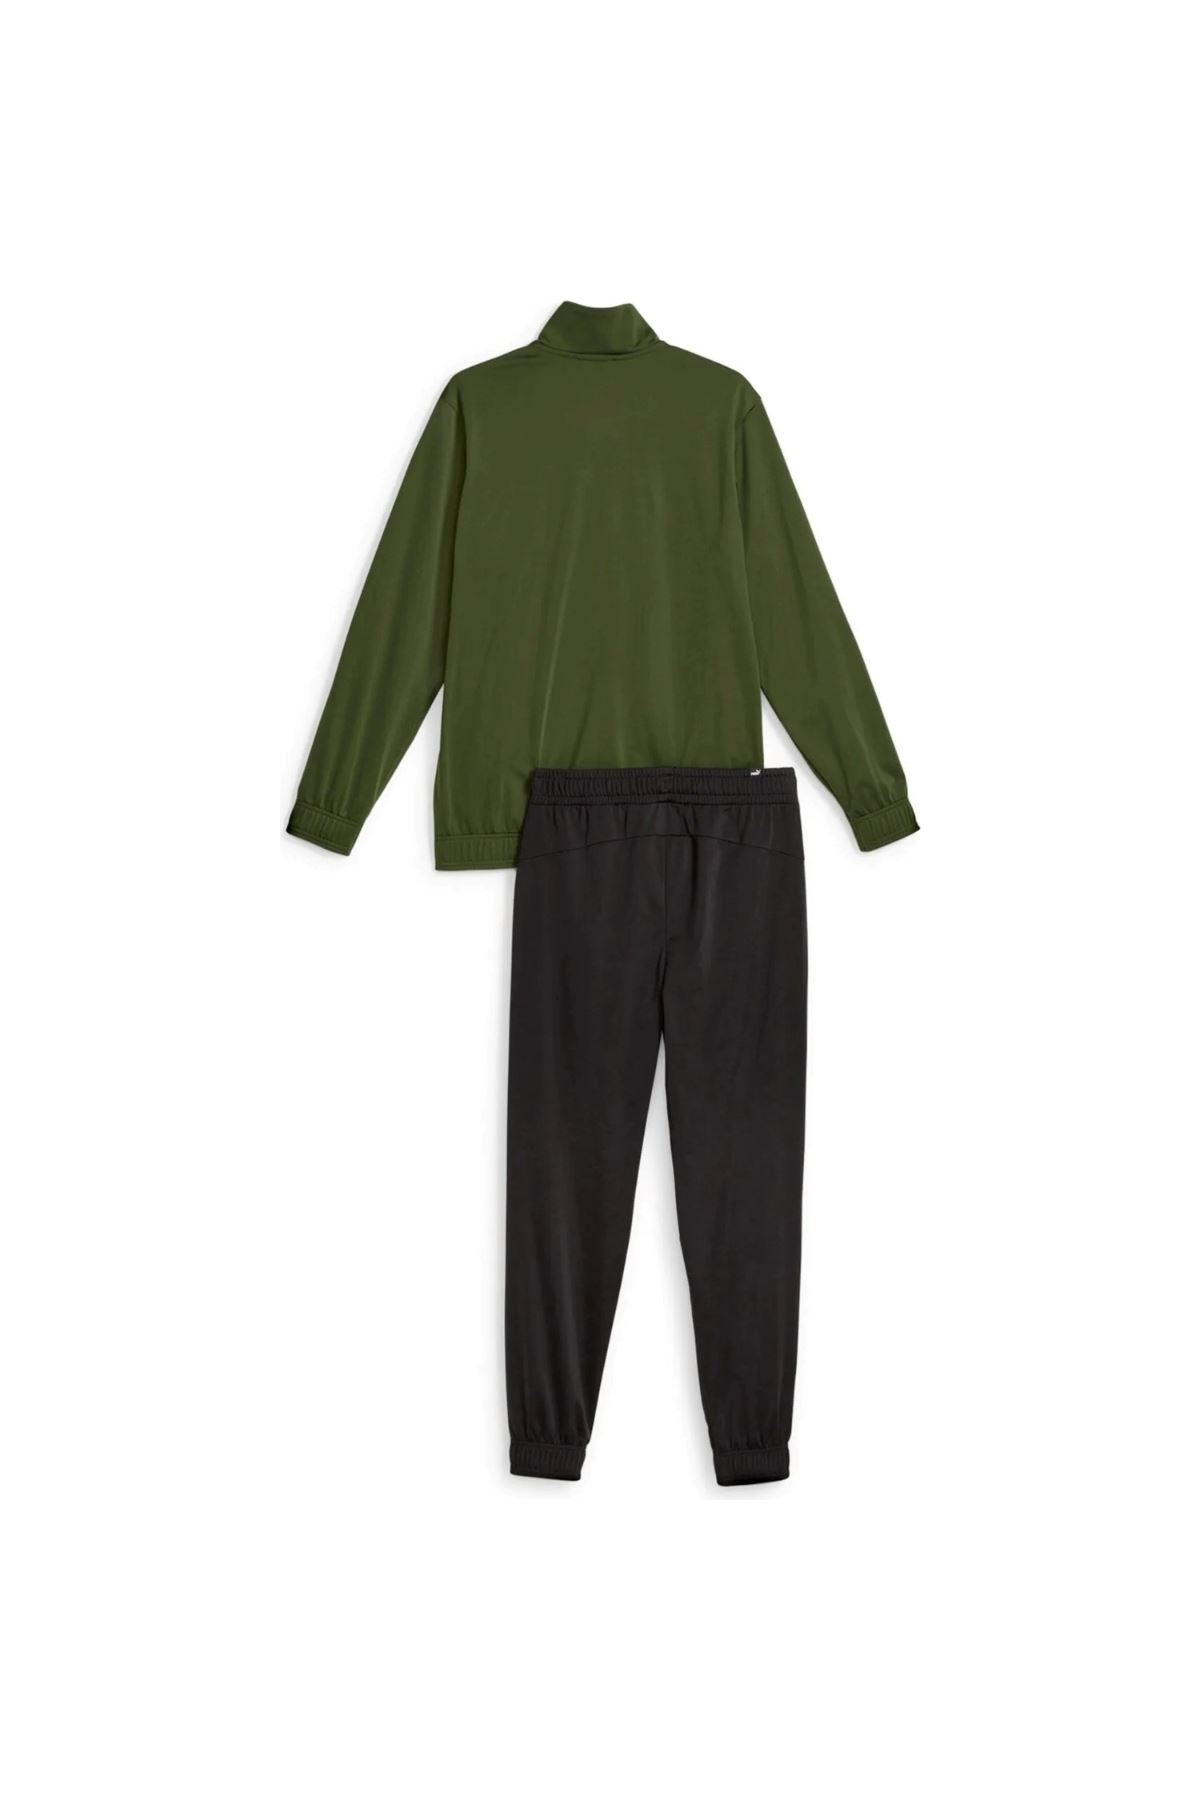 Puma Poly Suit Cl Erkek Yeşil Eşofman Takımı - 677427-31